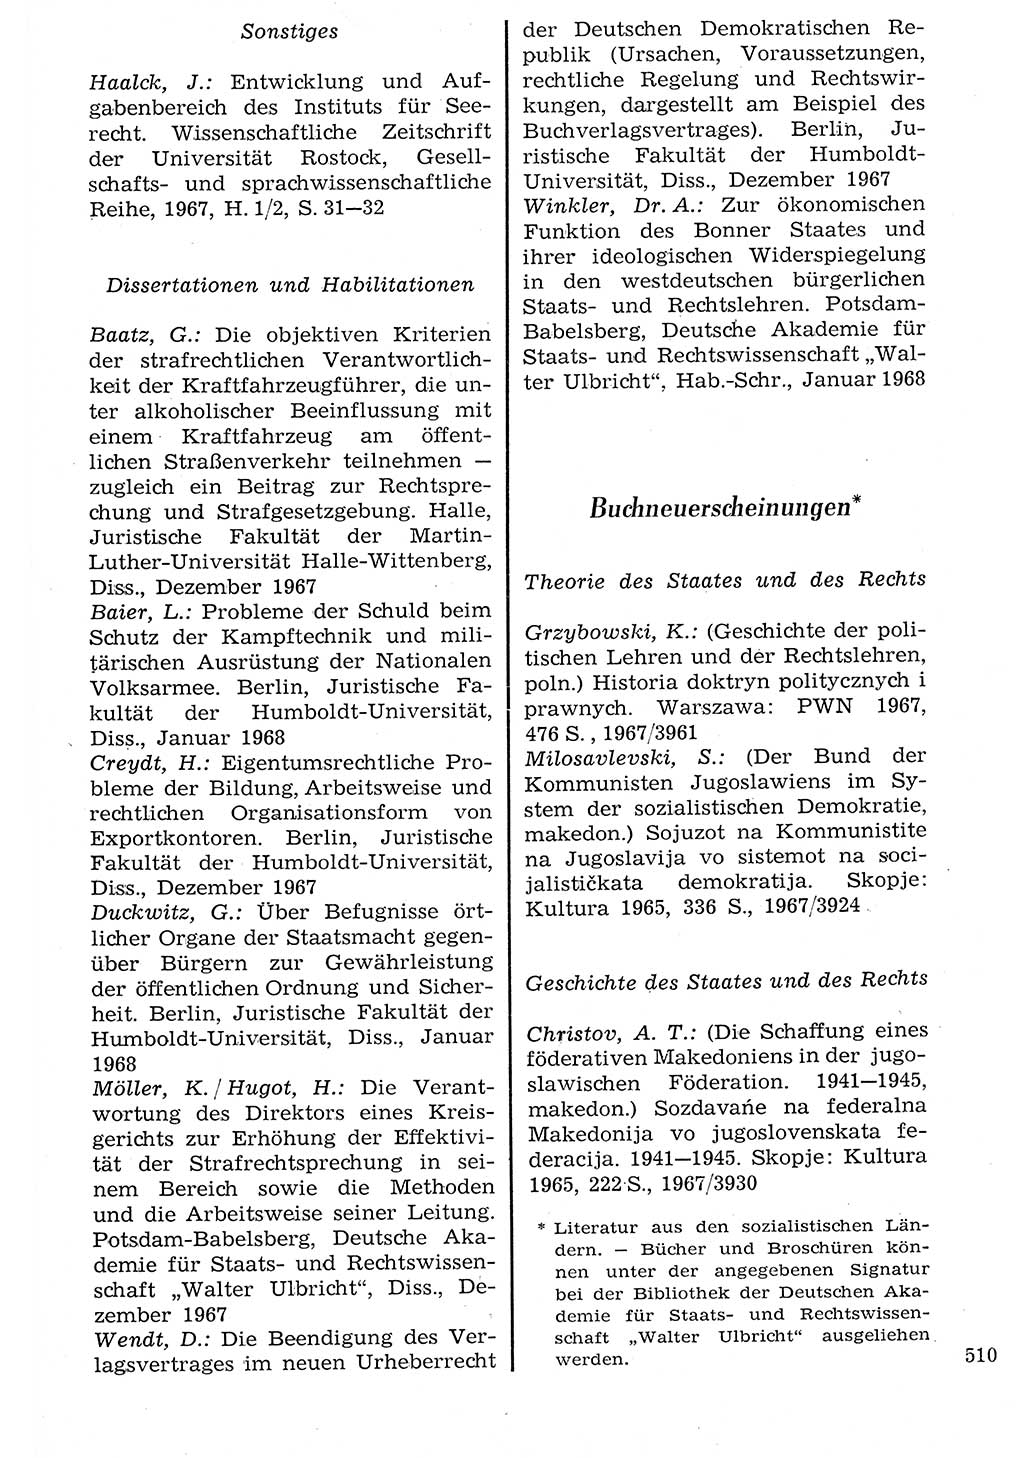 Staat und Recht (StuR), 17. Jahrgang [Deutsche Demokratische Republik (DDR)] 1968, Seite 510 (StuR DDR 1968, S. 510)